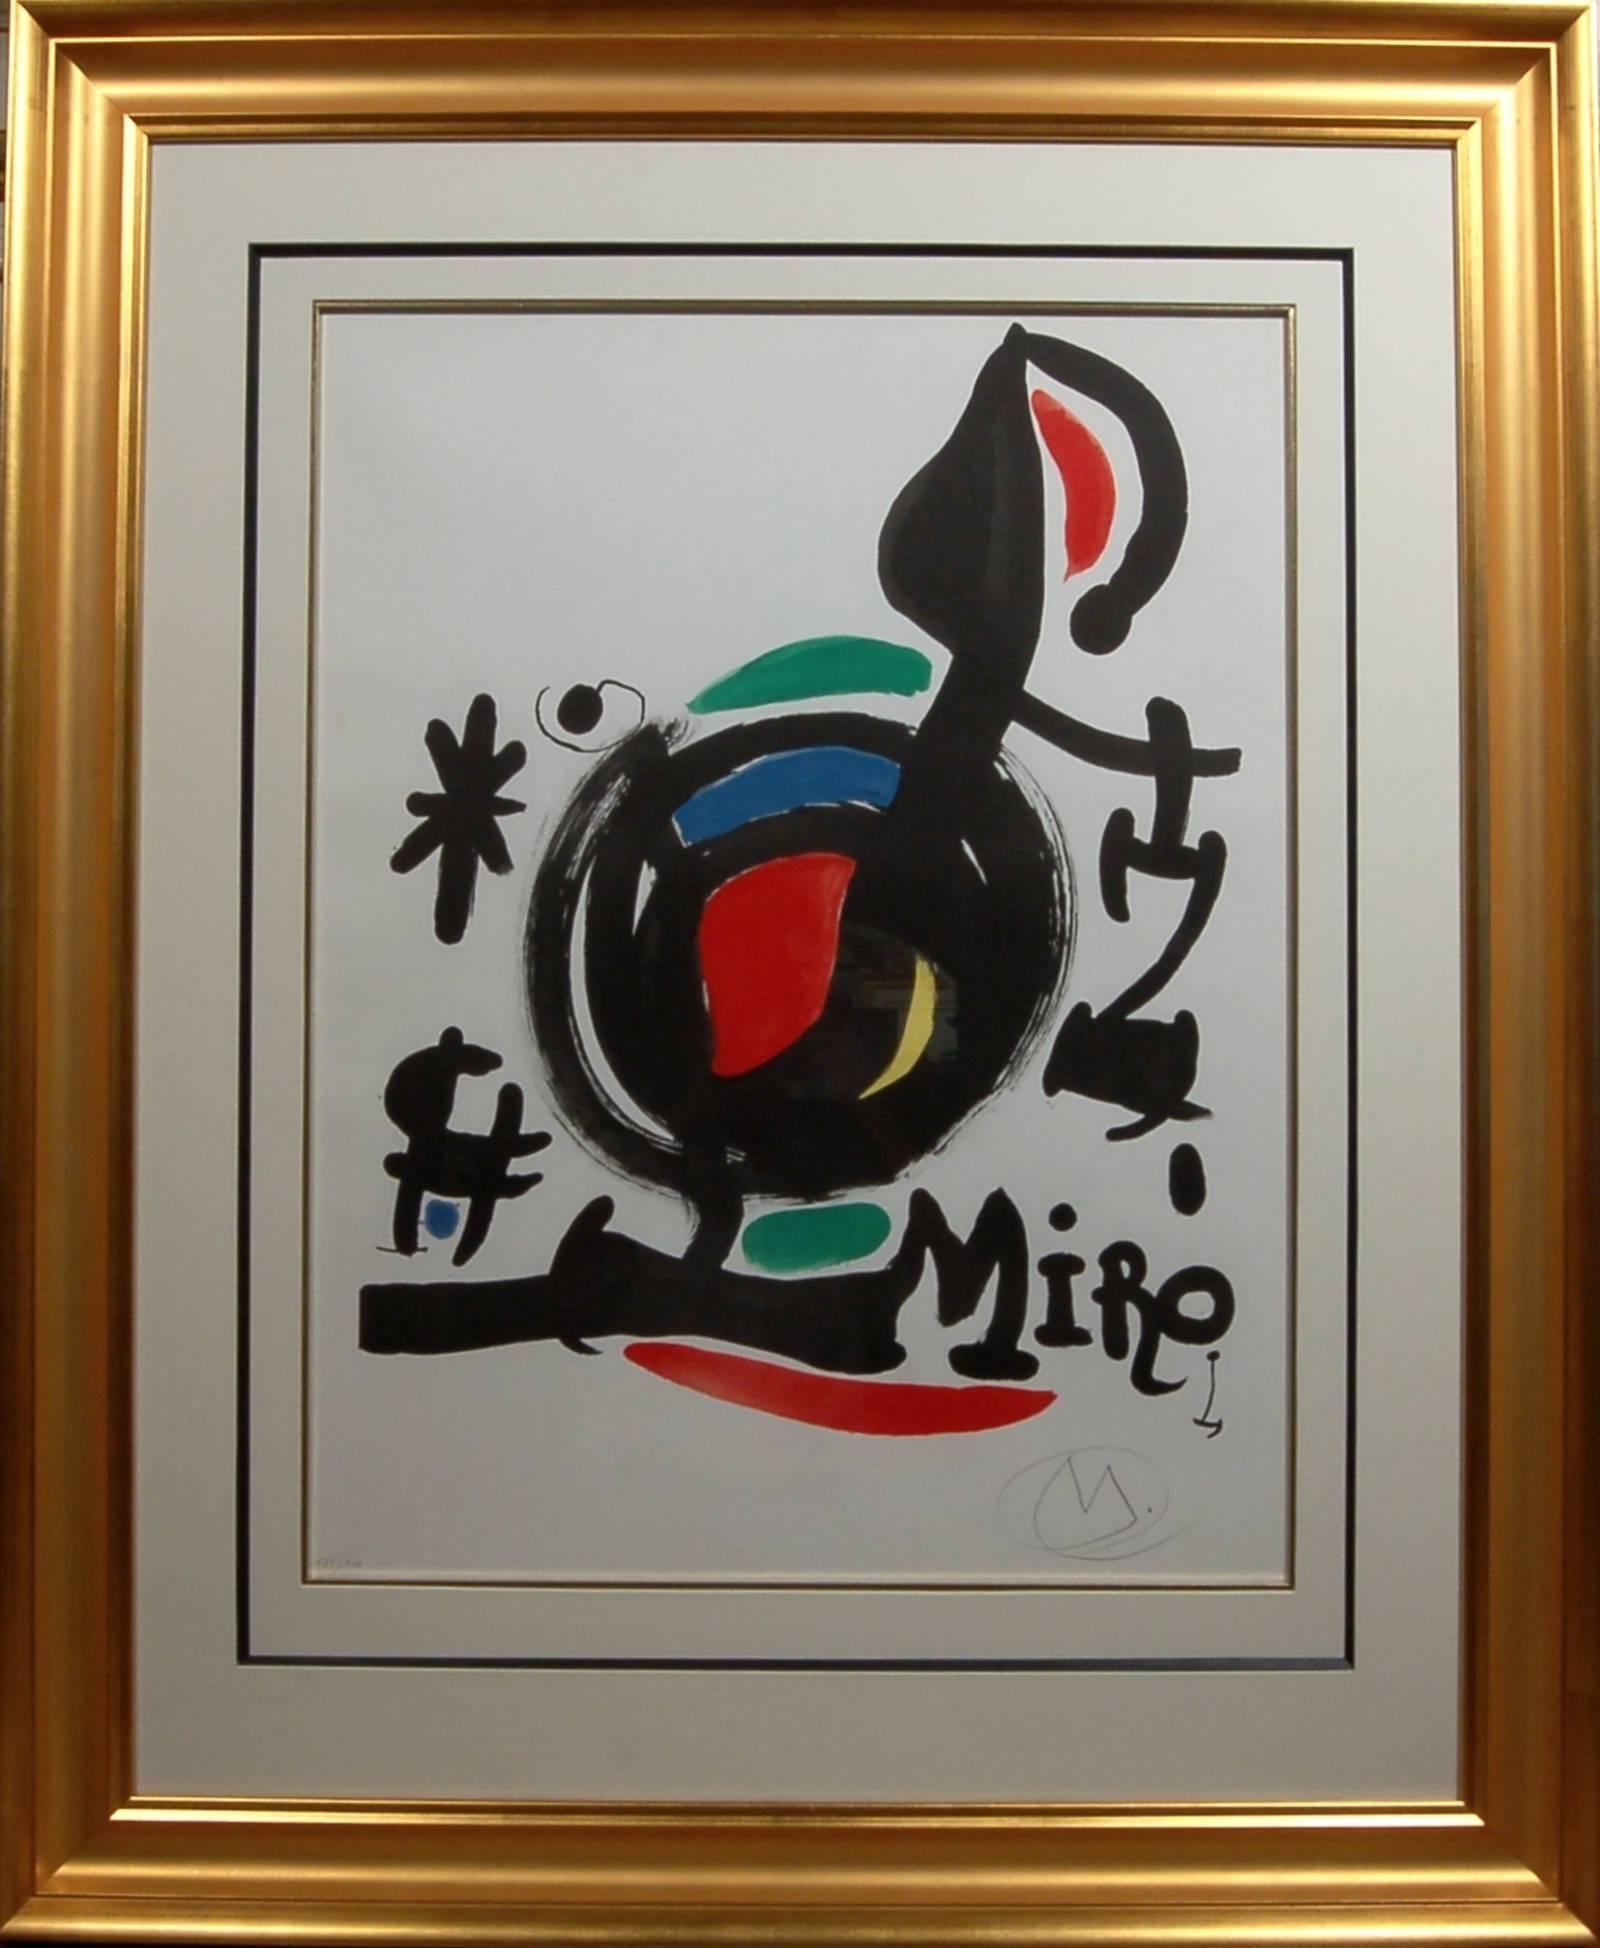 Joan Miró Abstract Print - Essencies De La Terra